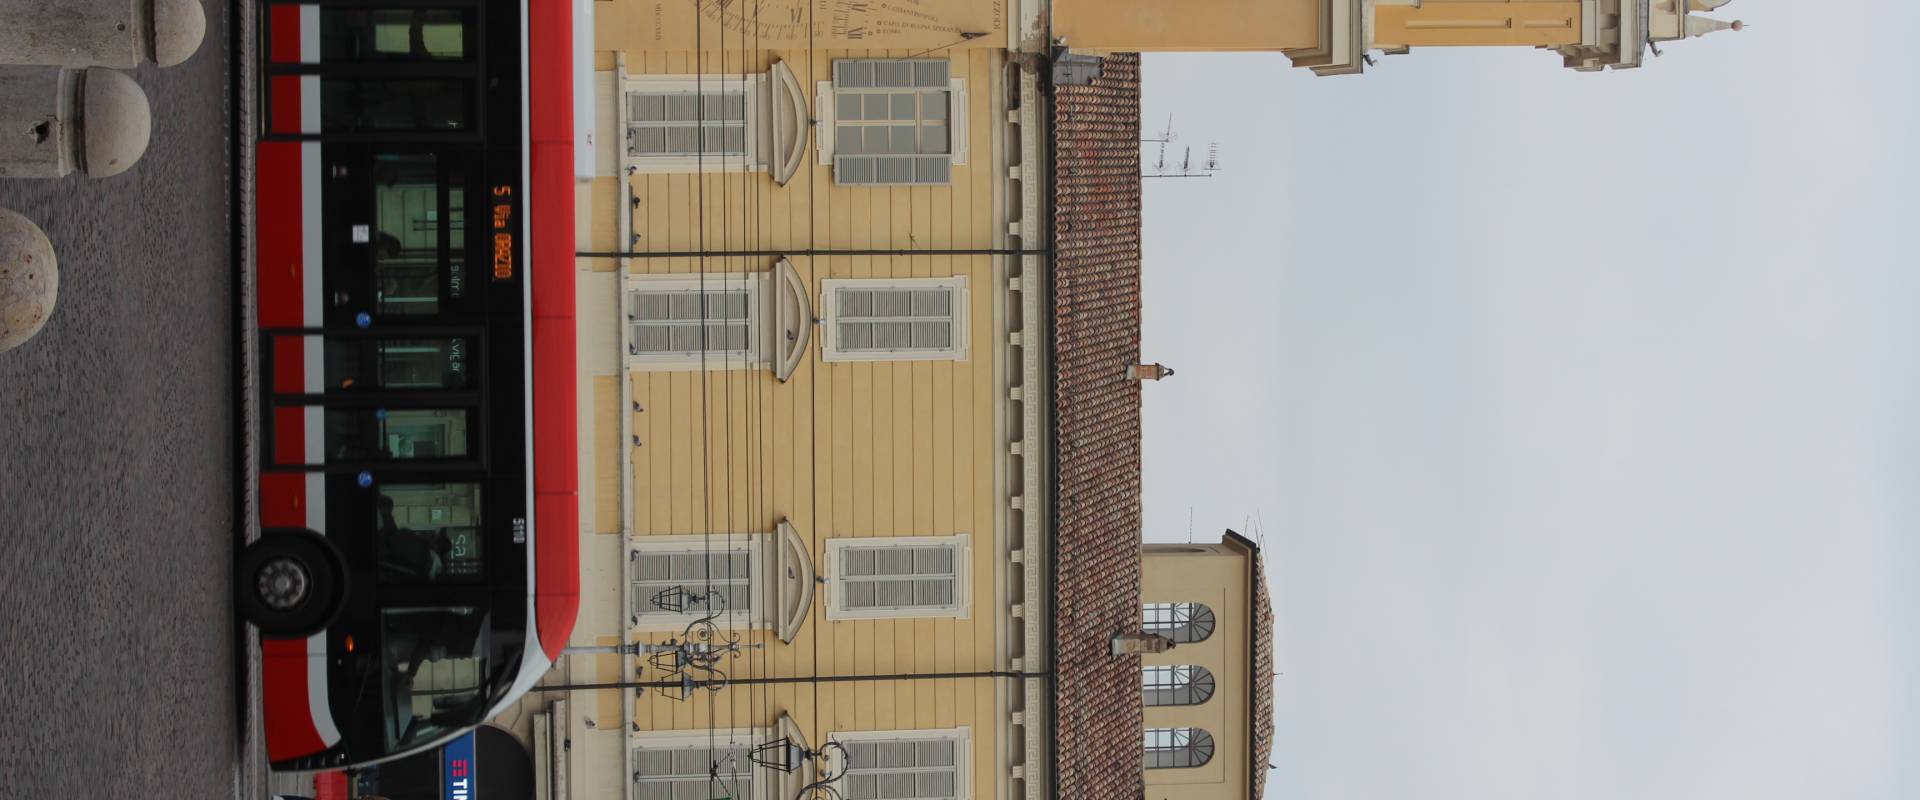 Palazzo Governatore Parma foto di Giulschel